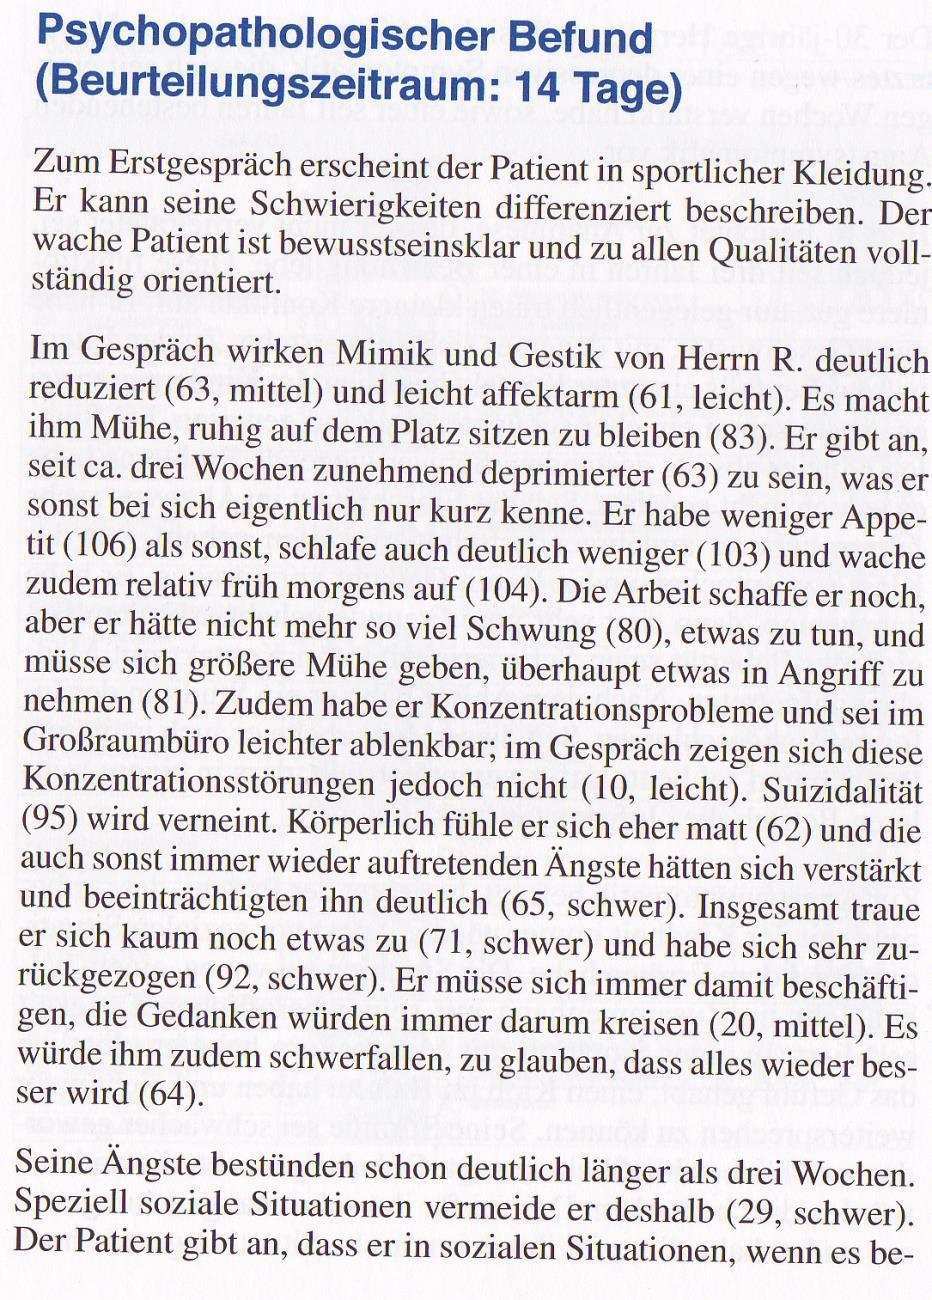 Psychopathologische Befunderhebung Nach Dem Amdp System Prof Dr Rolf Dieter Stieglitz Universitat Basel Pdf Kostenfreier Download